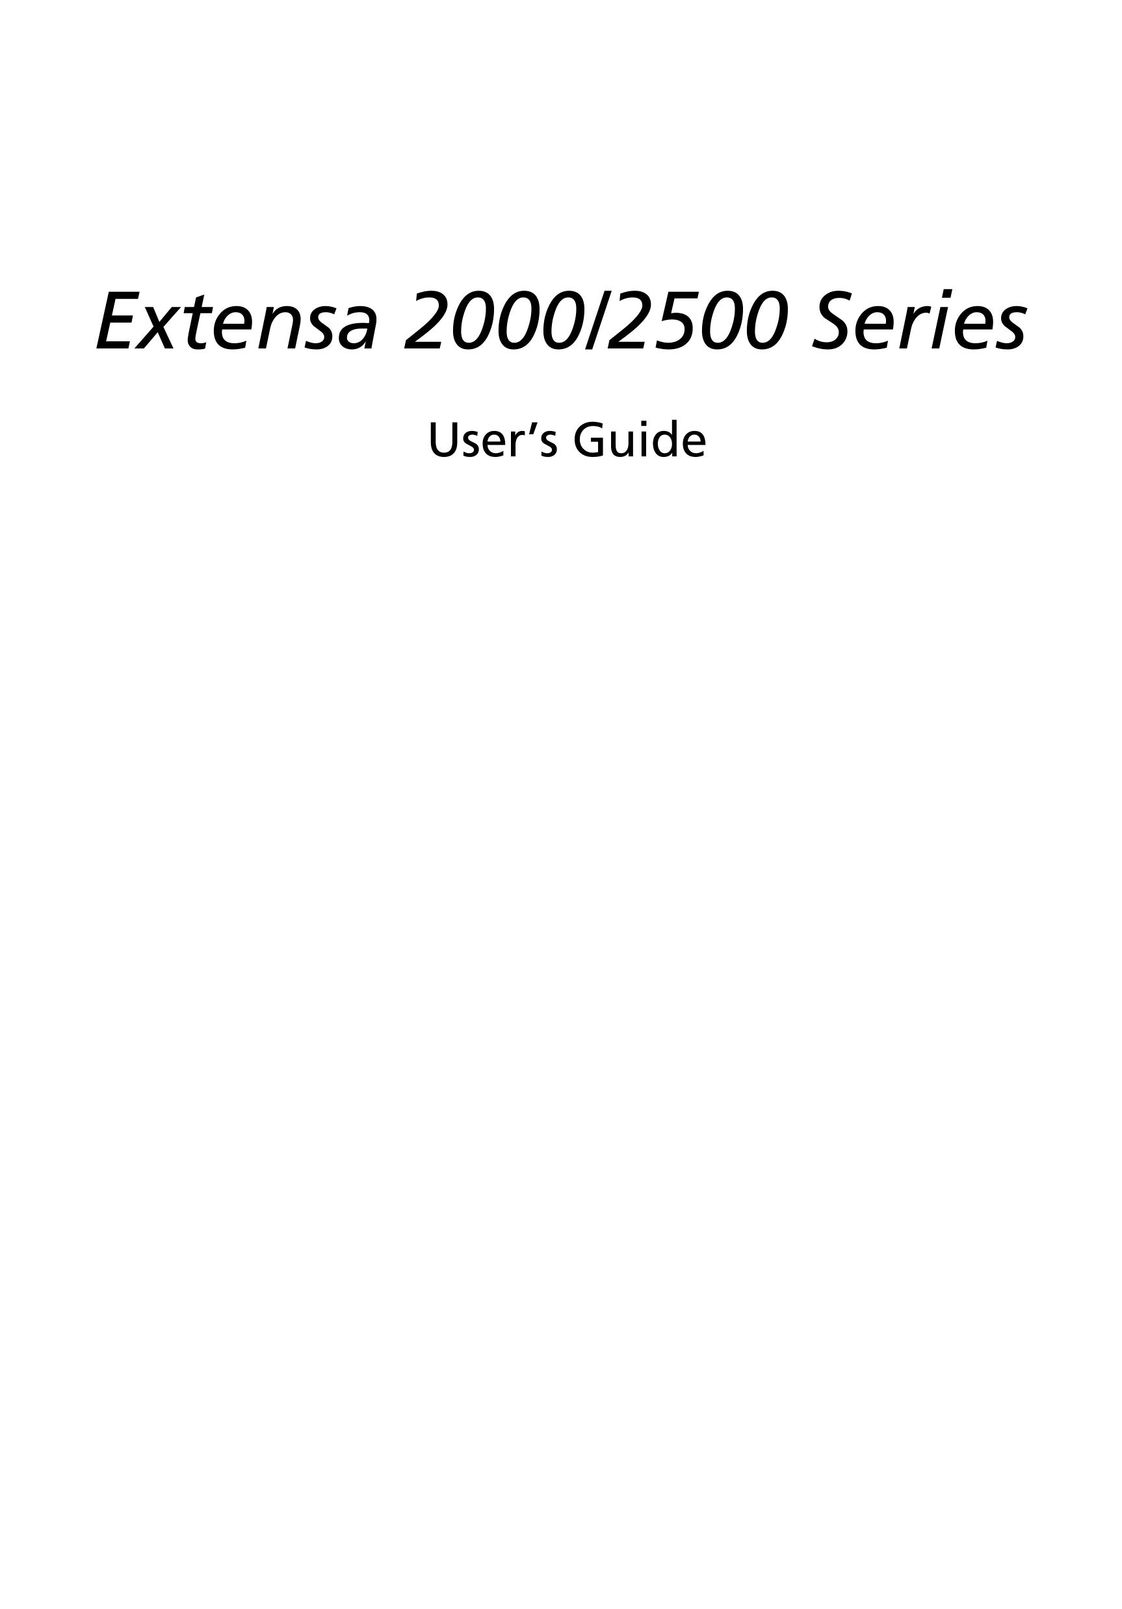 Acer 2000 Series Laptop User Manual